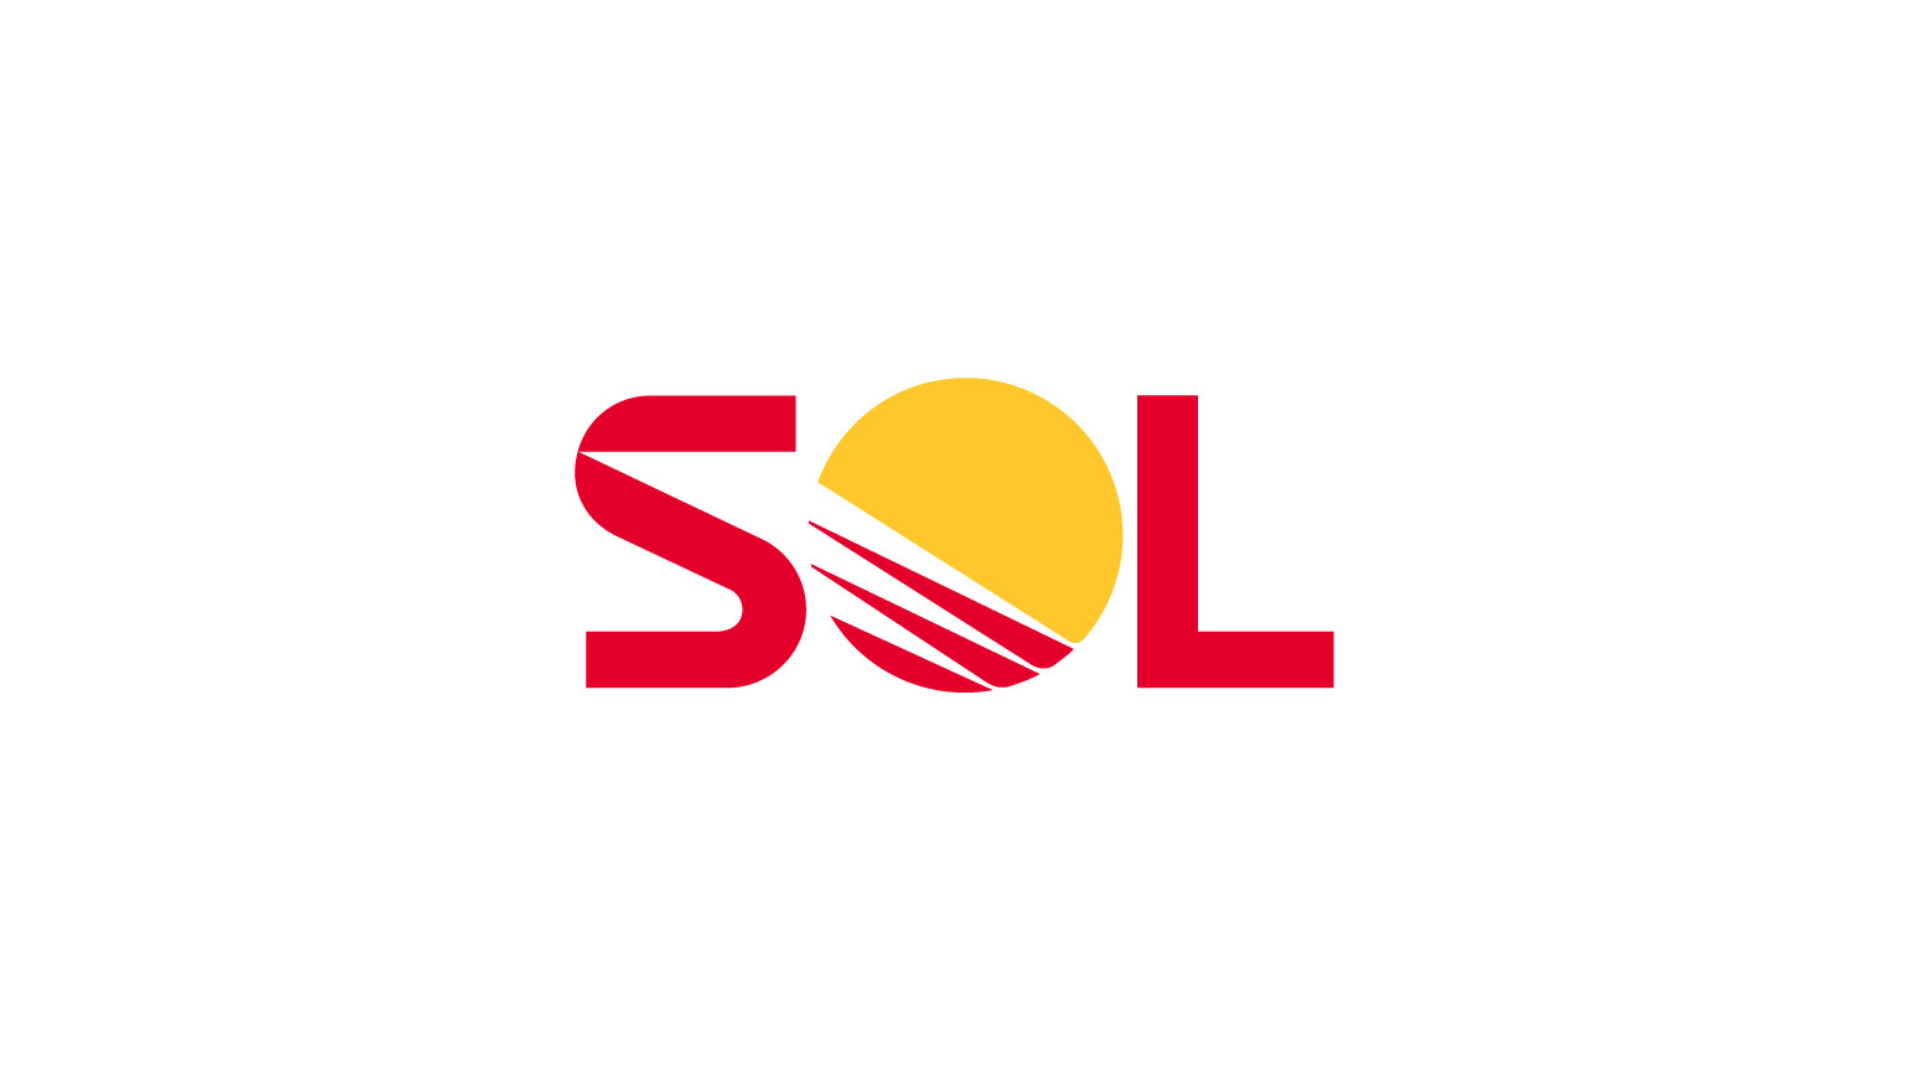 SOL Baltics (Reģ. Nr. 40103933760) aicina darbā apkopējus Ķekavas novada Saulgožos